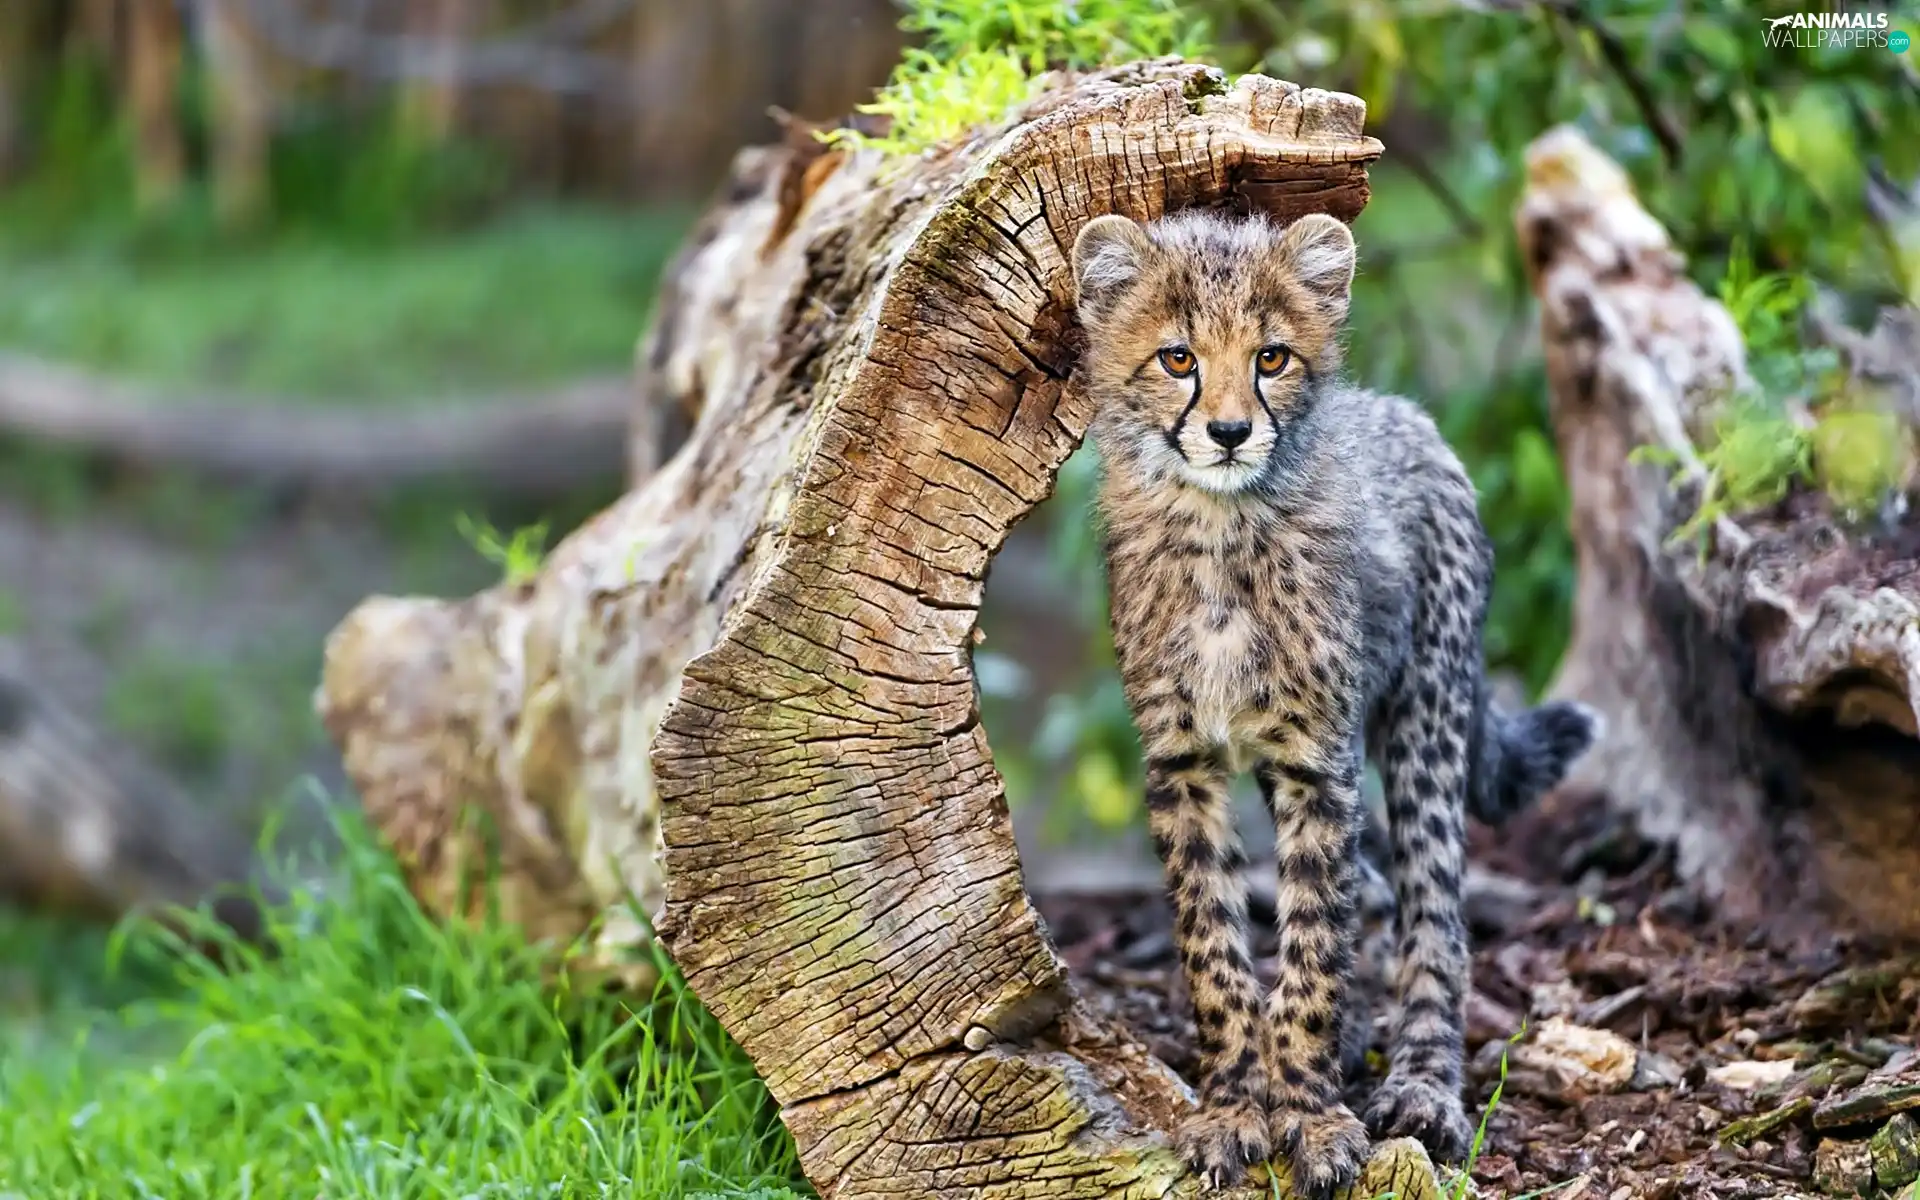 young, Cheetah